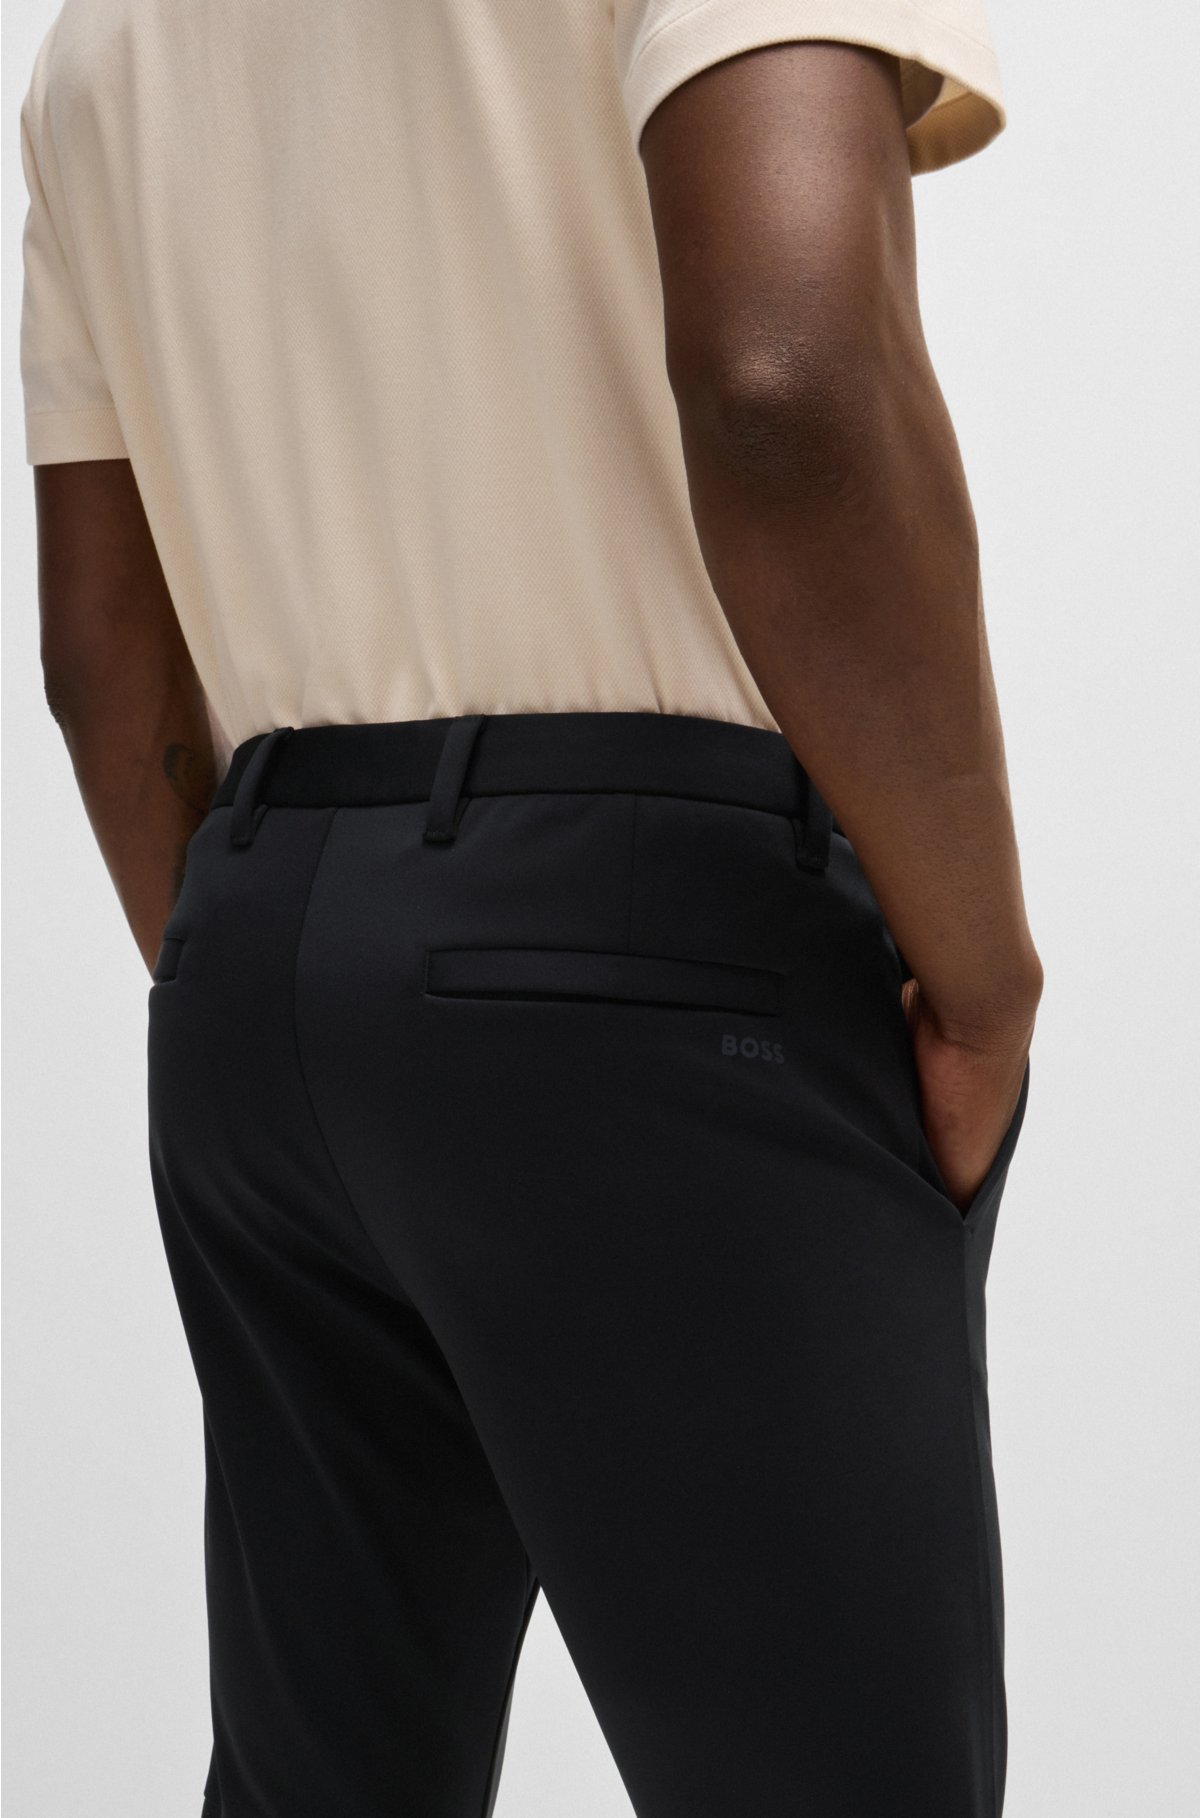 Slim-fit trousers in waterproof softshell material, Black